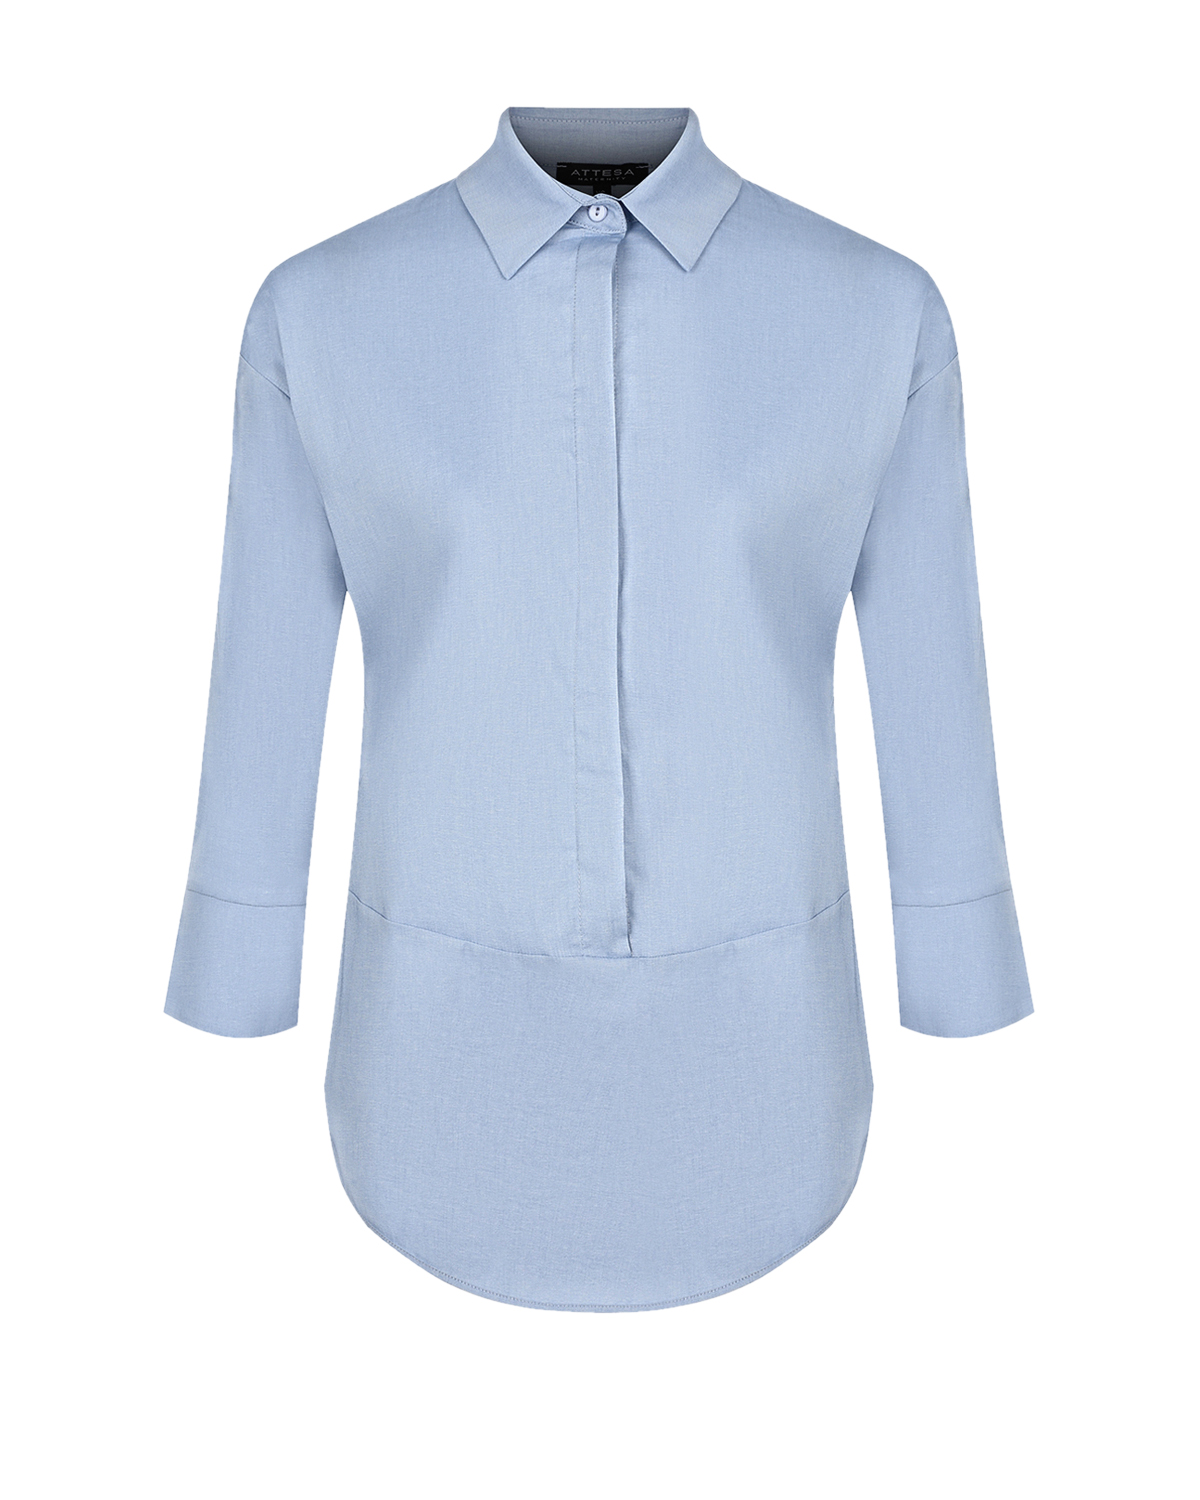 Синяя блуза с рукавами 3/4 Attesa, размер 38, цвет синий